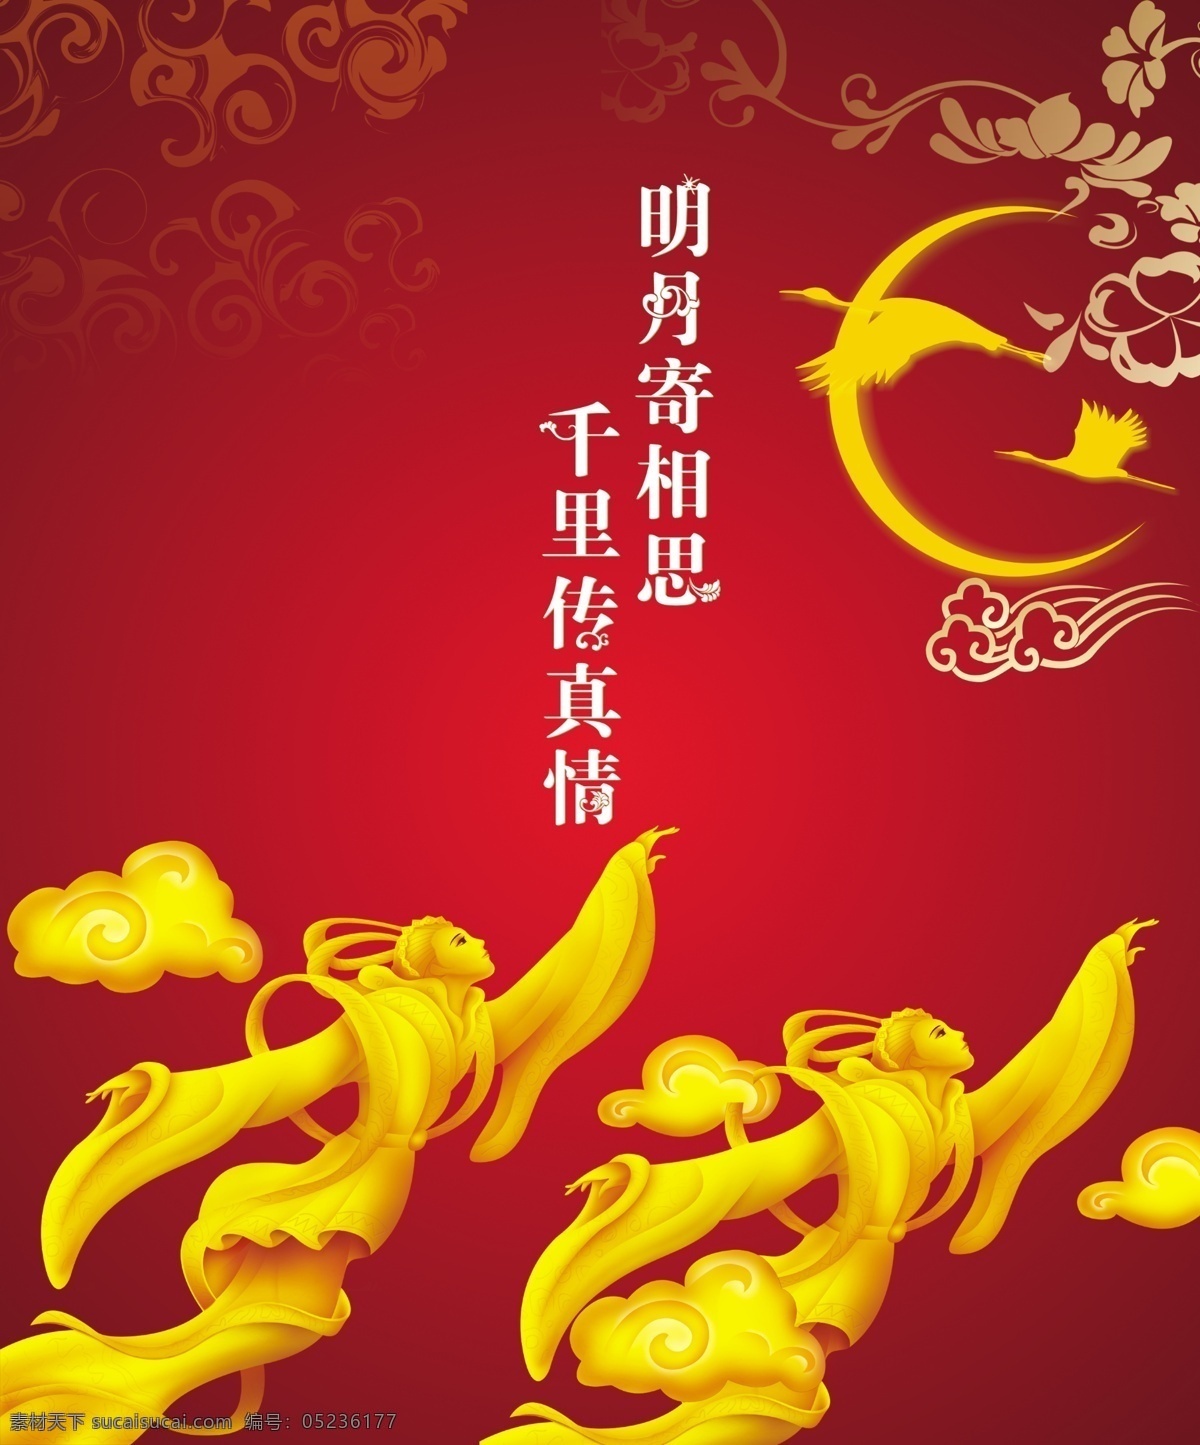 中国 嫦娥 古典红 广告设计模板 画册封面 源文件 中国红 中秋 中国嫦娥 其他海报设计